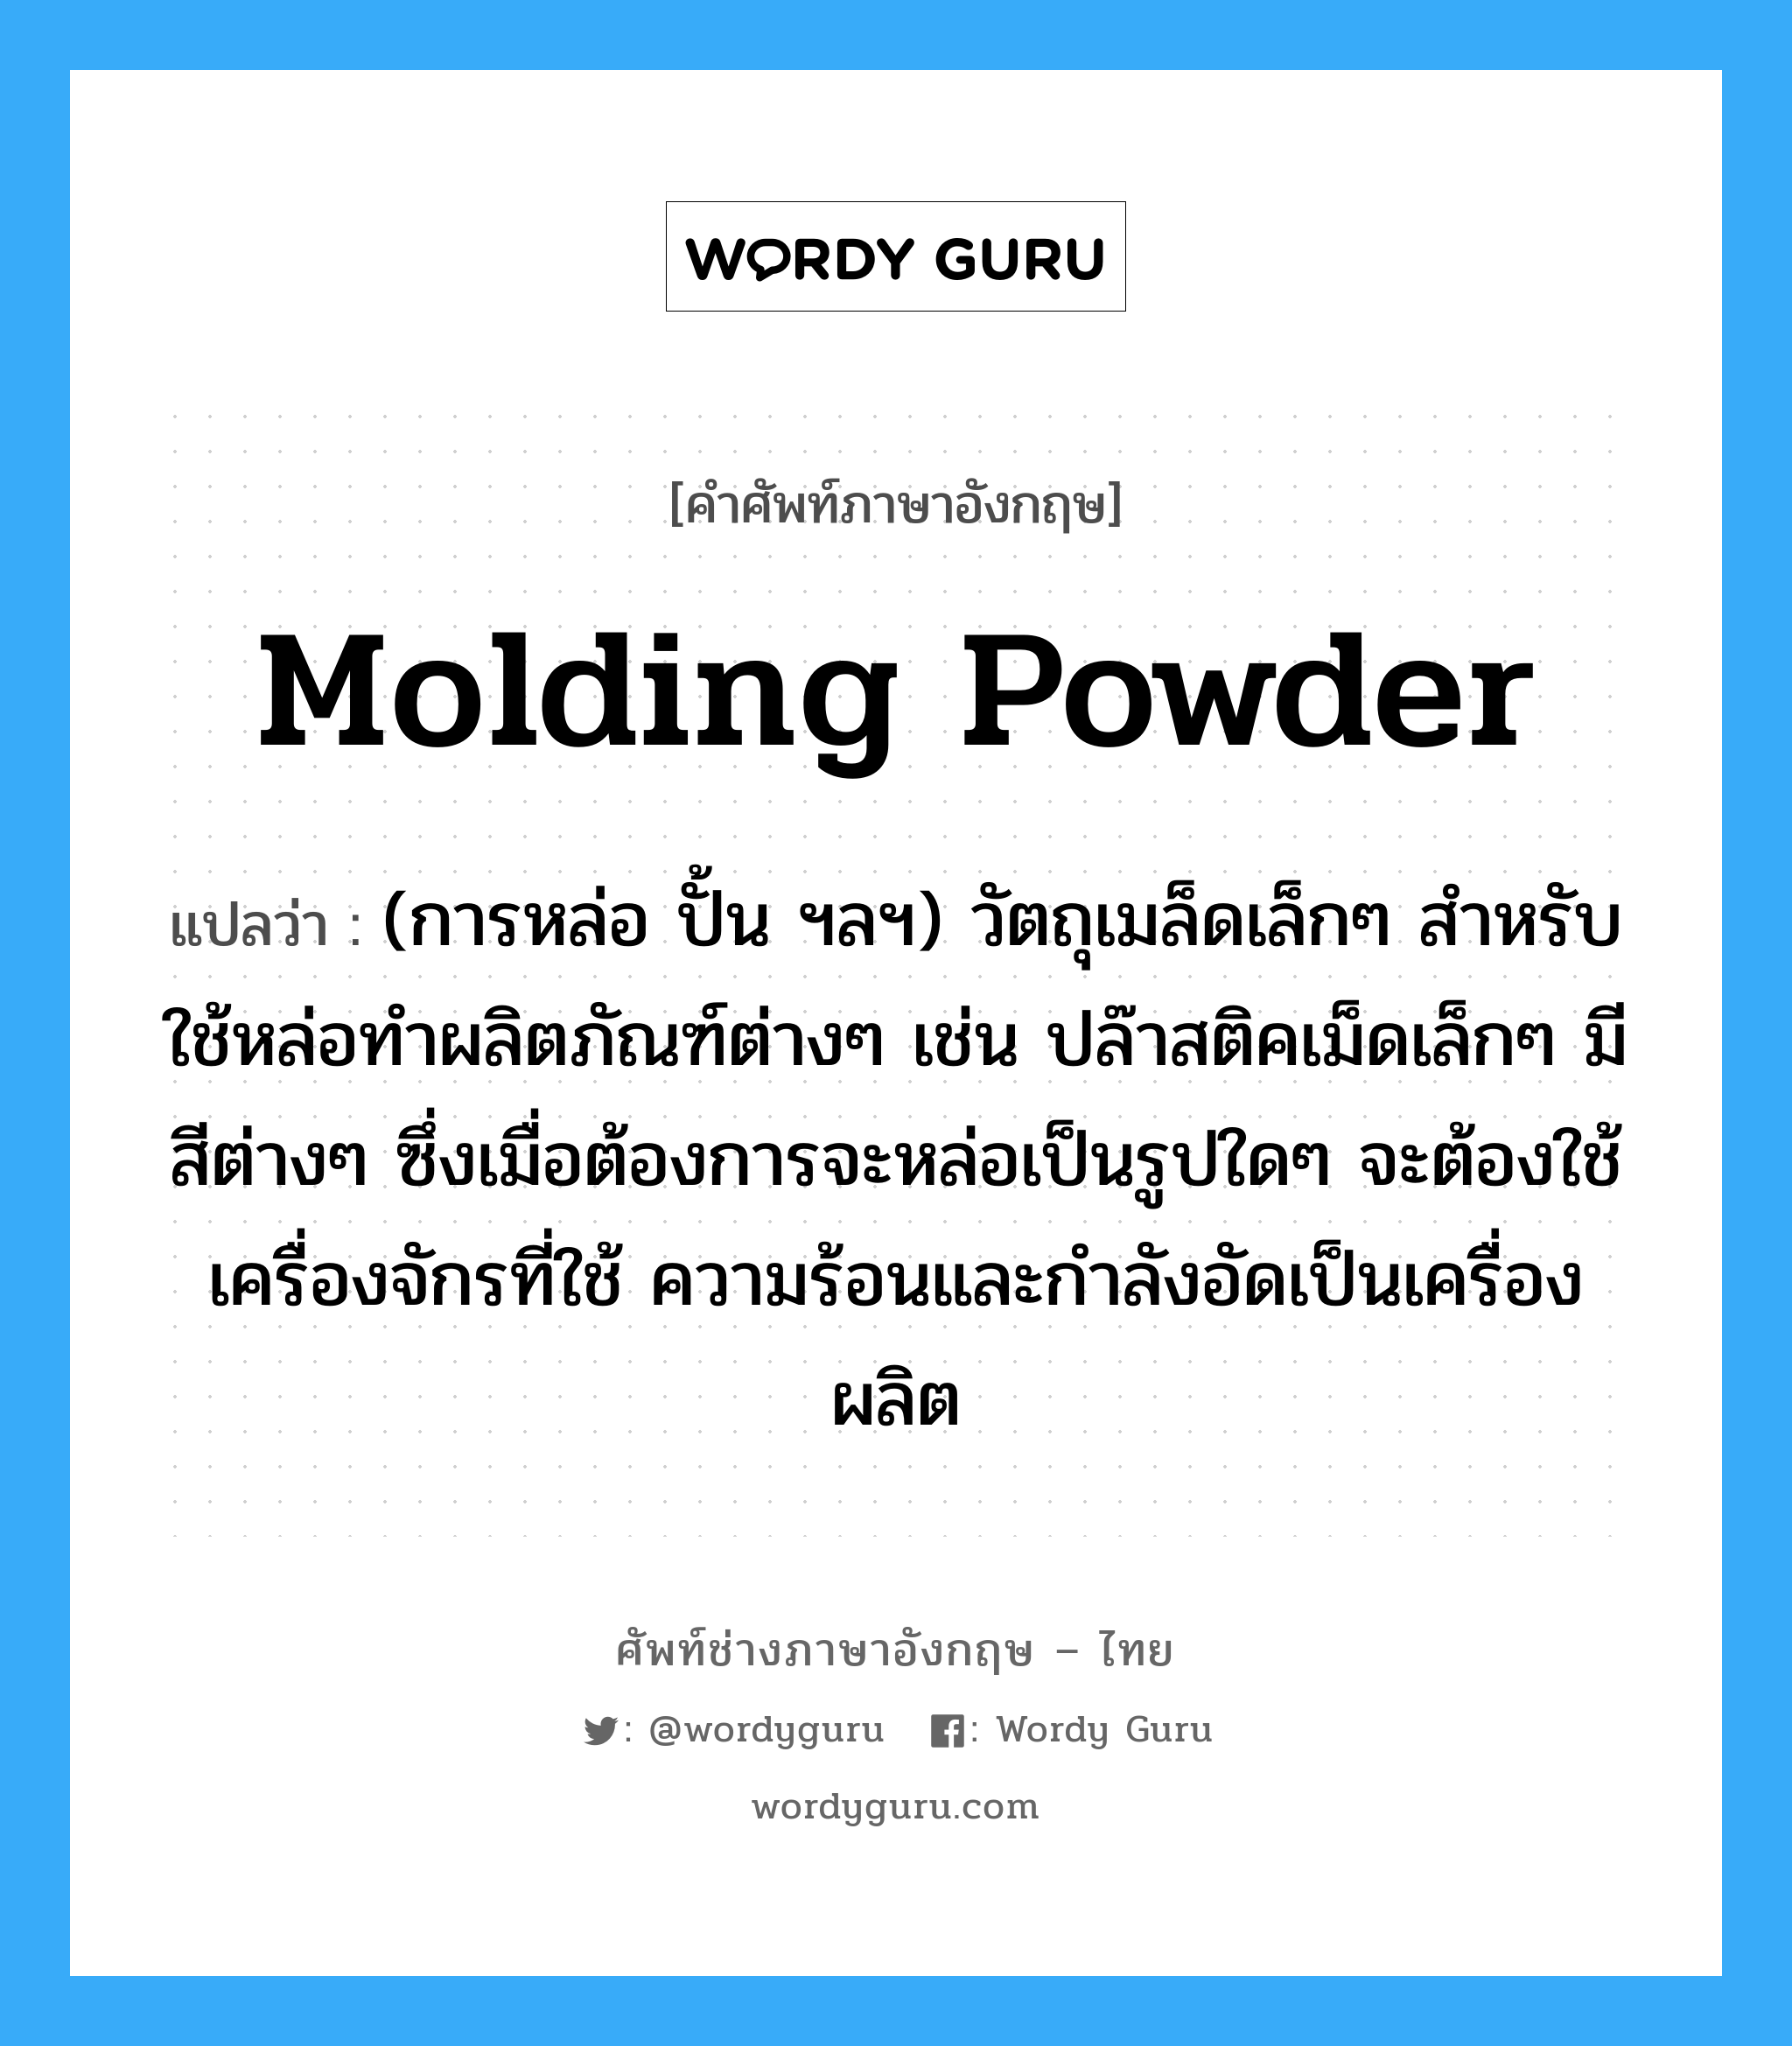 molding powder แปลว่า?, คำศัพท์ช่างภาษาอังกฤษ - ไทย molding powder คำศัพท์ภาษาอังกฤษ molding powder แปลว่า (การหล่อ ปั้น ฯลฯ) วัตถุเมล็ดเล็กๆ สำหรับใช้หล่อทำผลิตภัณฑ์ต่างๆ เช่น ปล๊าสติคเม็ดเล็กๆ มีสีต่างๆ ซึ่งเมื่อต้องการจะหล่อเป็นรูปใดๆ จะต้องใช้เครื่องจักรที่ใช้ ความร้อนและกำลังอัดเป็นเครื่องผลิต